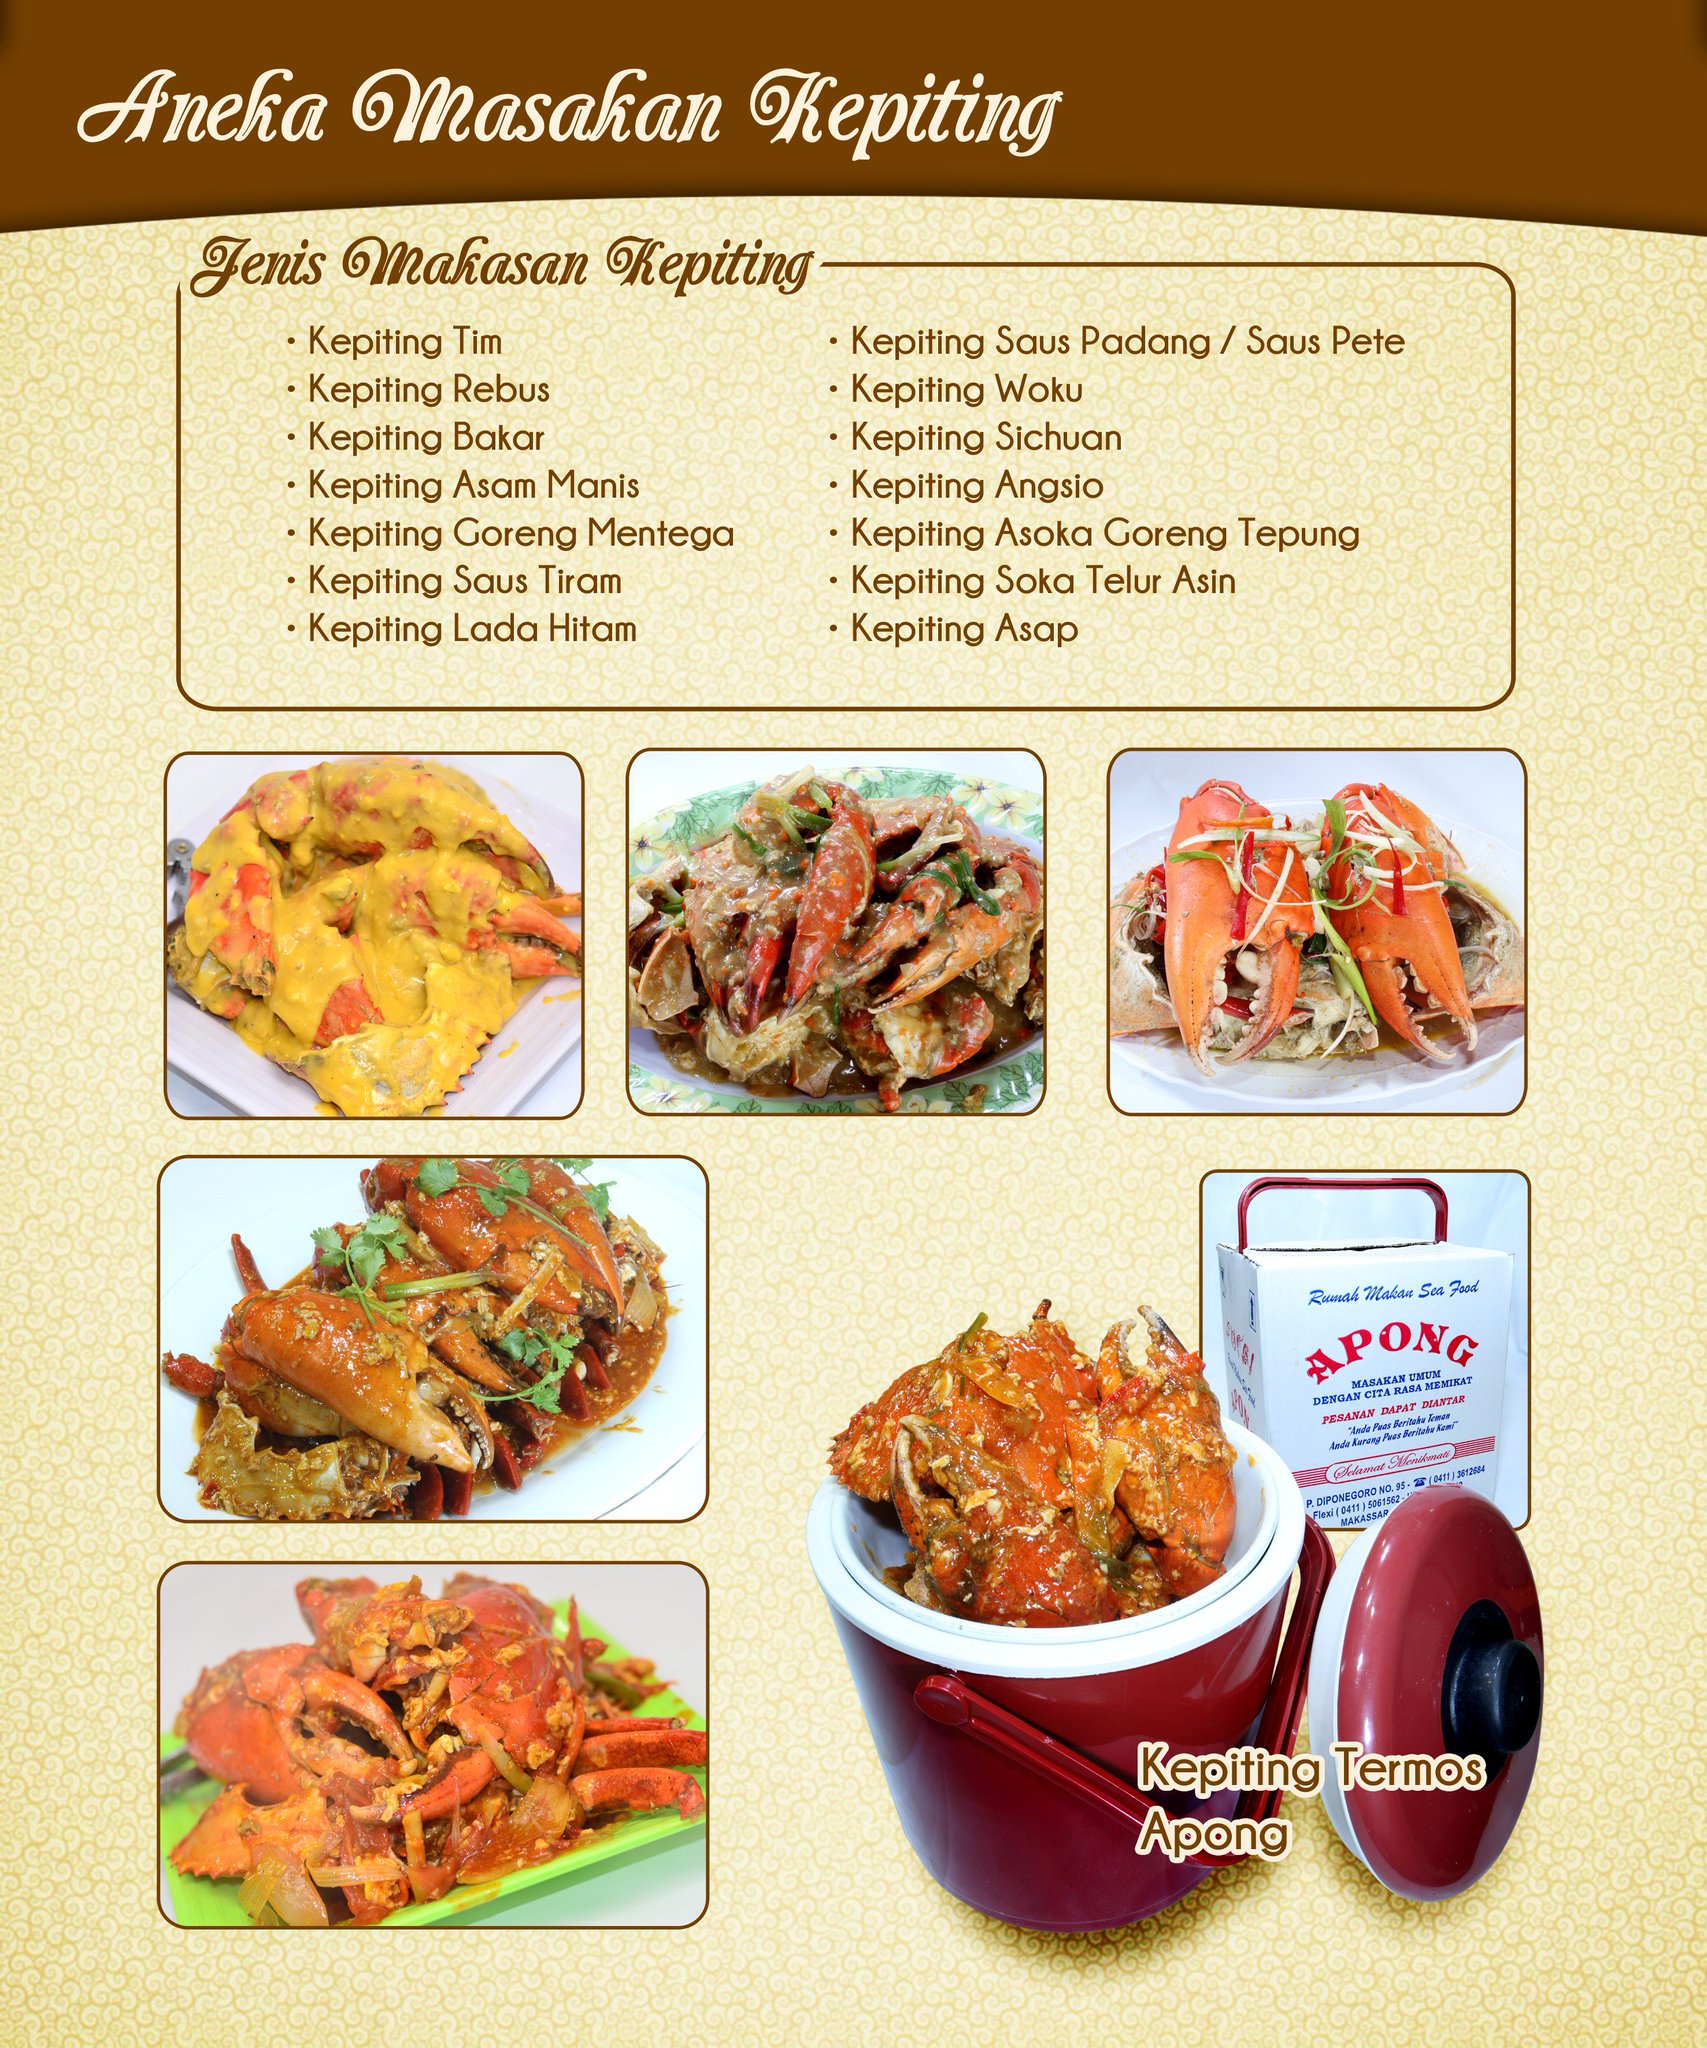 Resto Apong Seafood on Twitter: "Aneka Masakan Kepiting@Restaurant